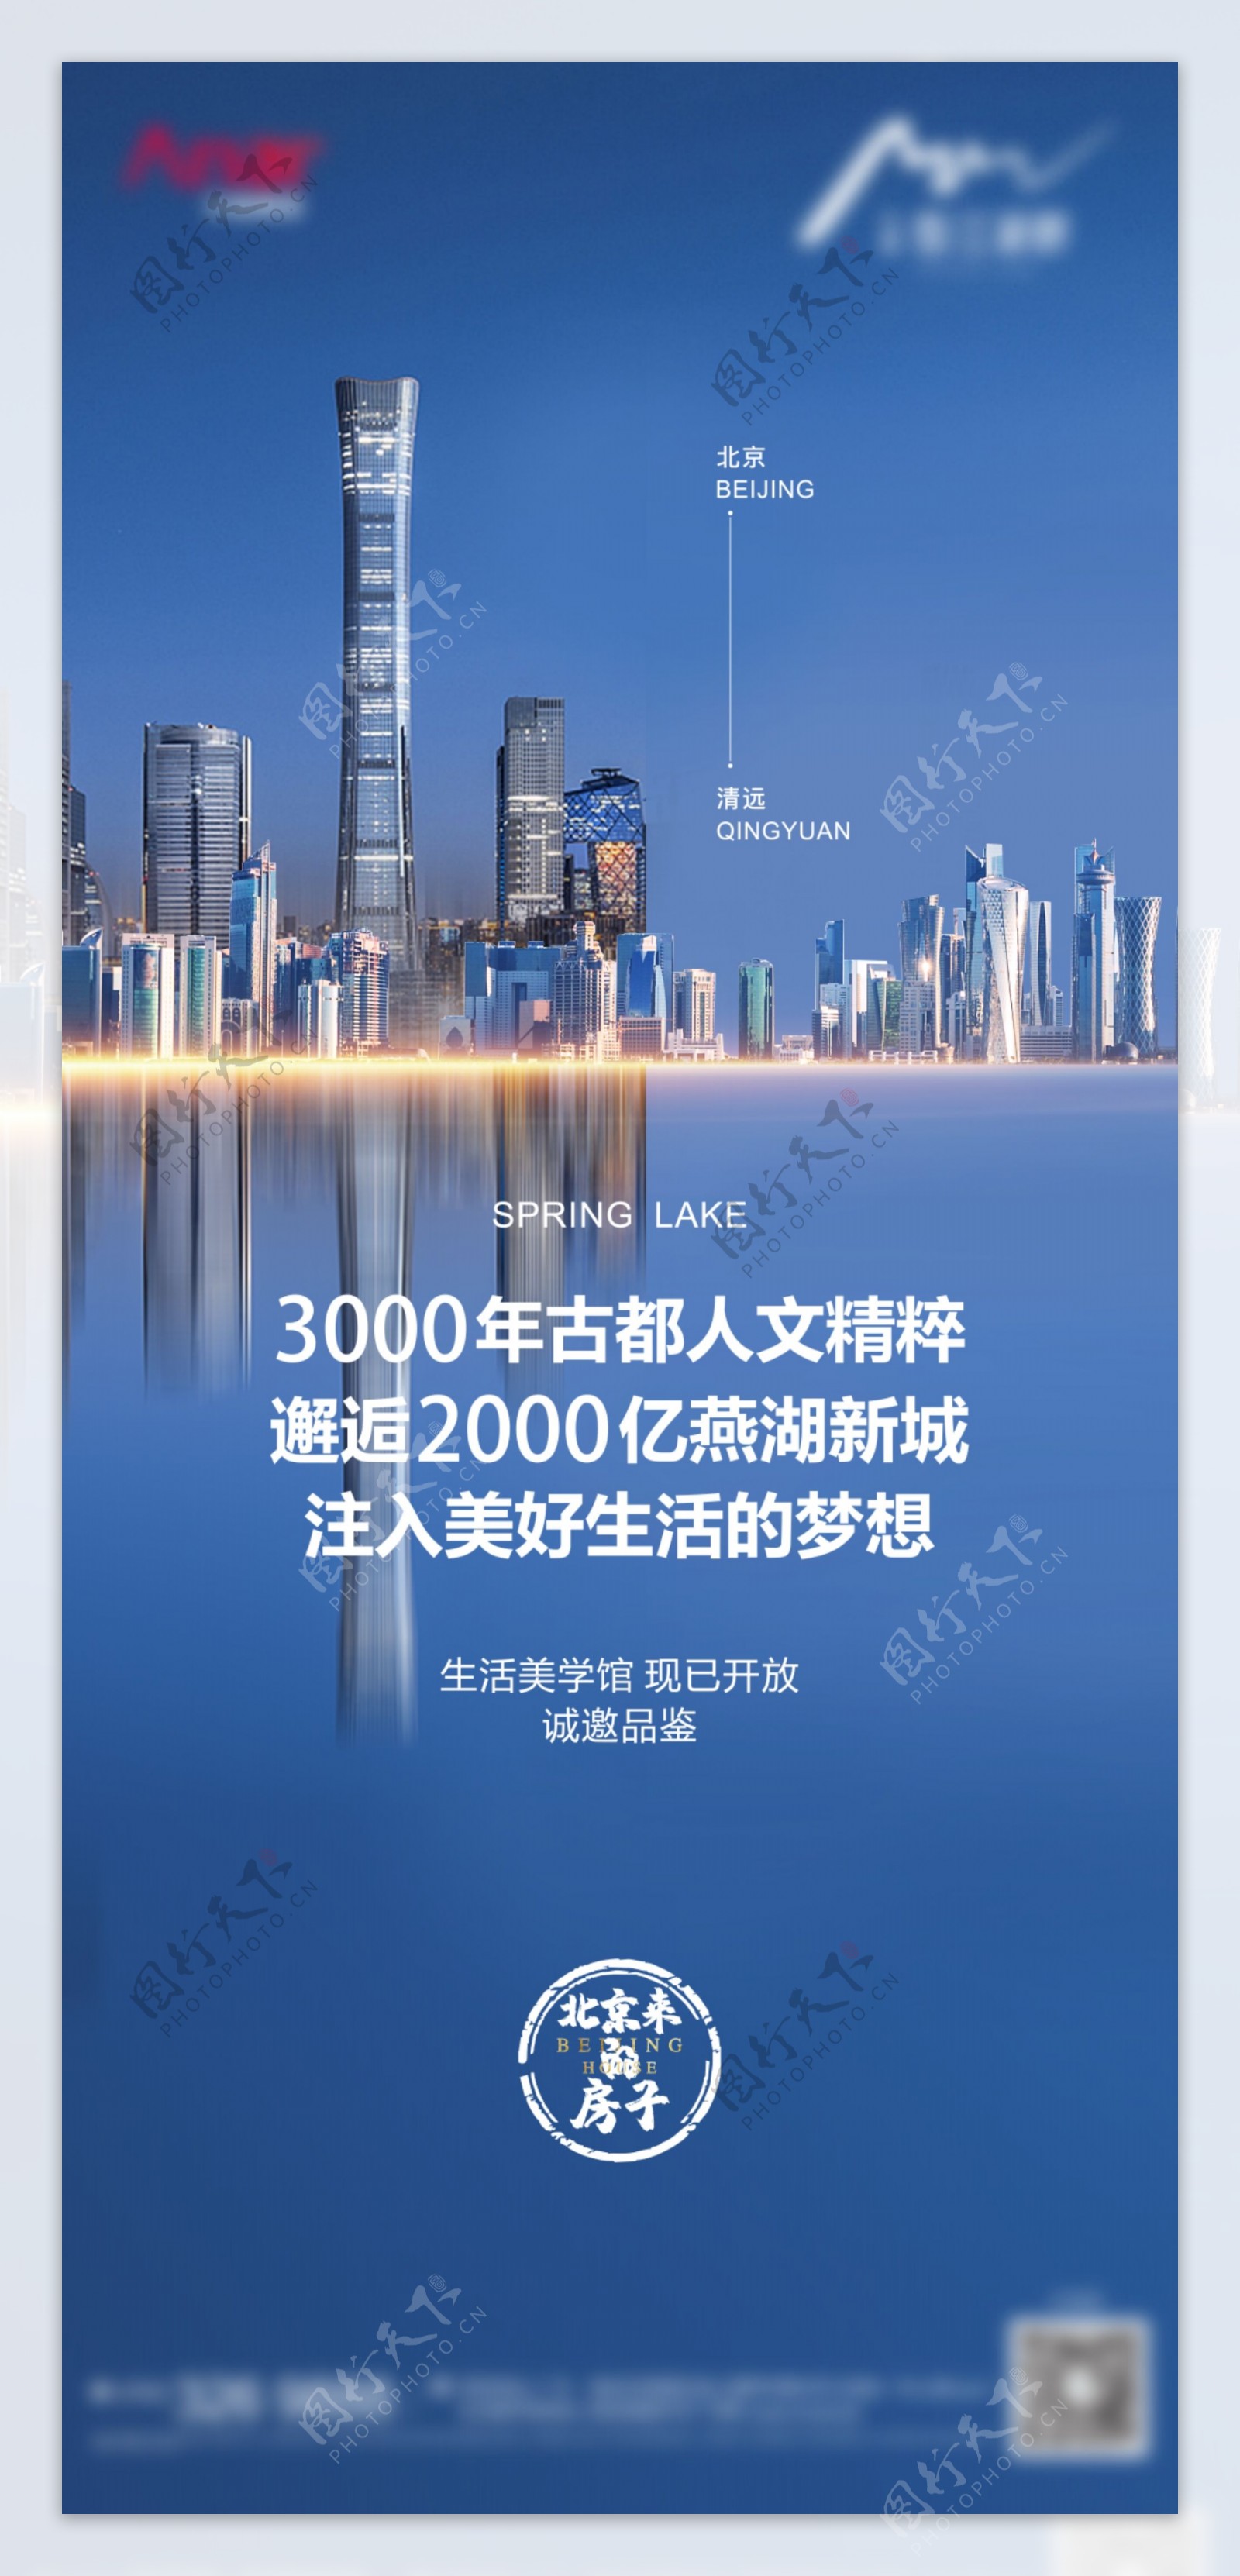 微信单图刷图中国尊图片